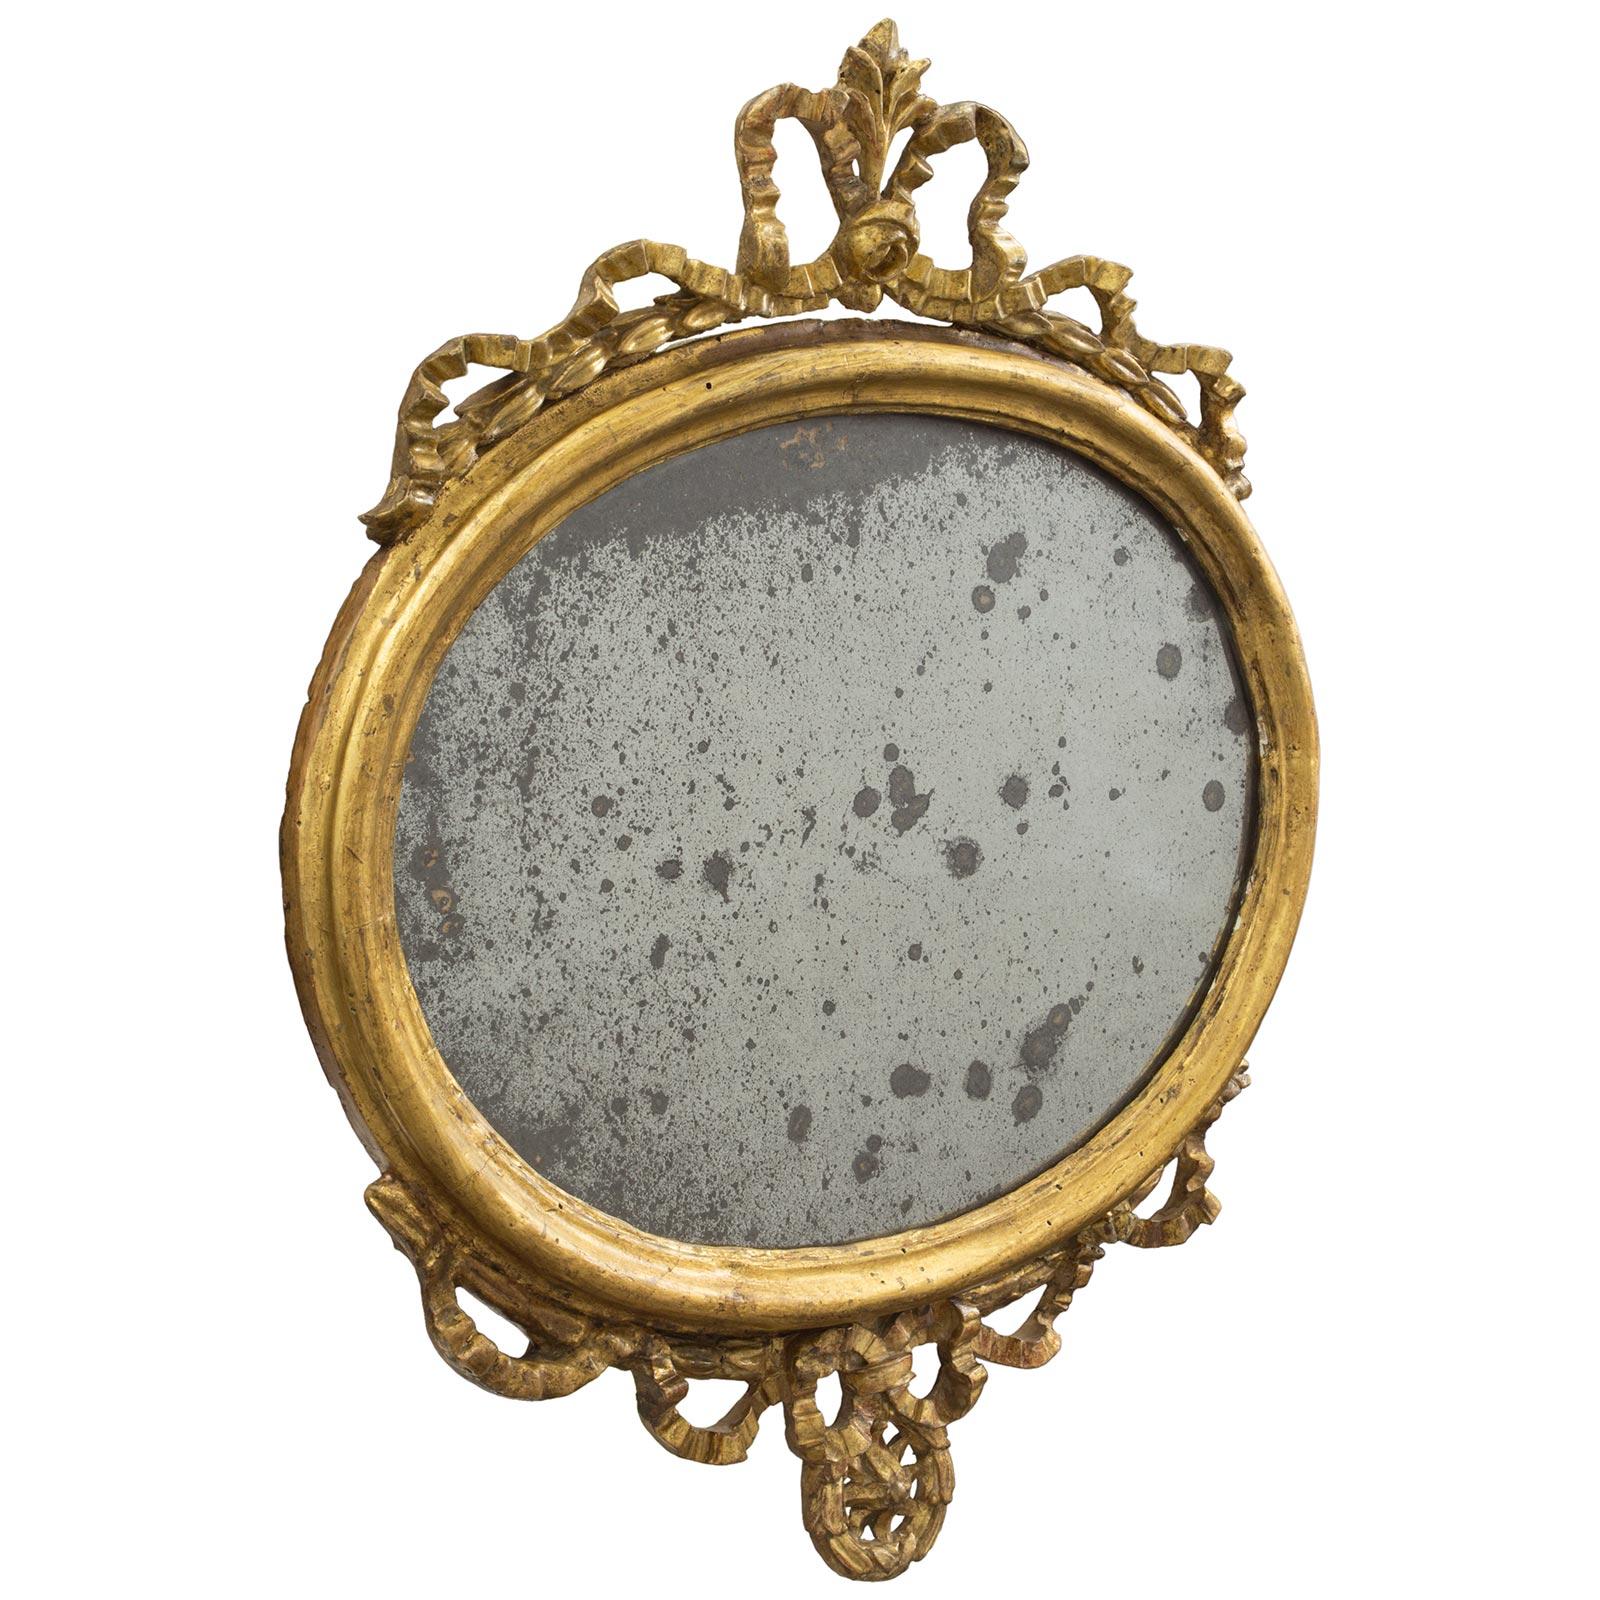 Une charmante paire de miroirs italiens en bois doré d'époque Louis XVI du 18e siècle. Chaque miroir présente un cadre ovale tacheté avec une élégante réserve inférieure constituée d'un ruban à enrouler avec un nœud central noué sur une couronne de